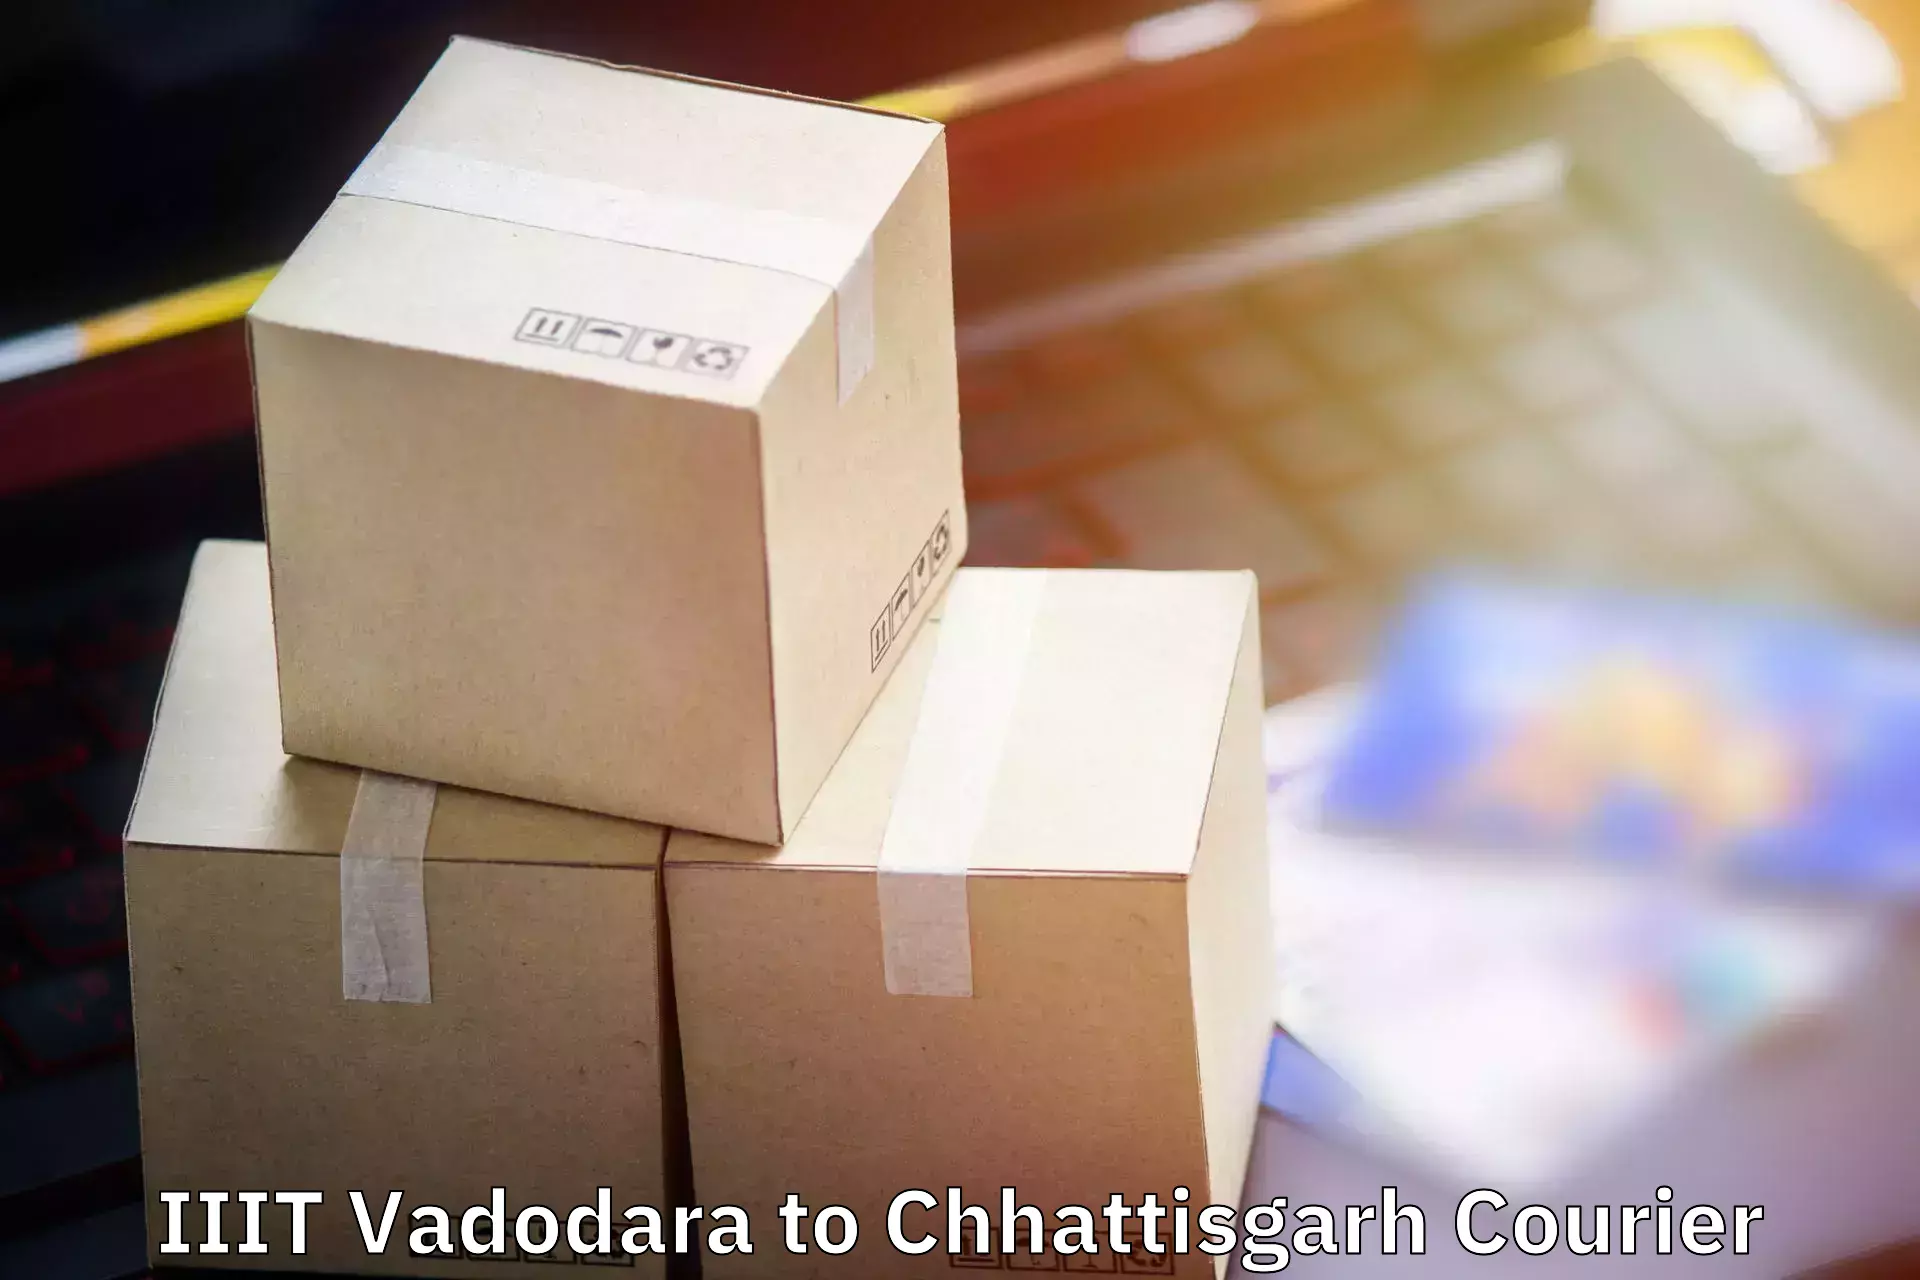 Luggage shipment tracking IIIT Vadodara to Wadrafnagar